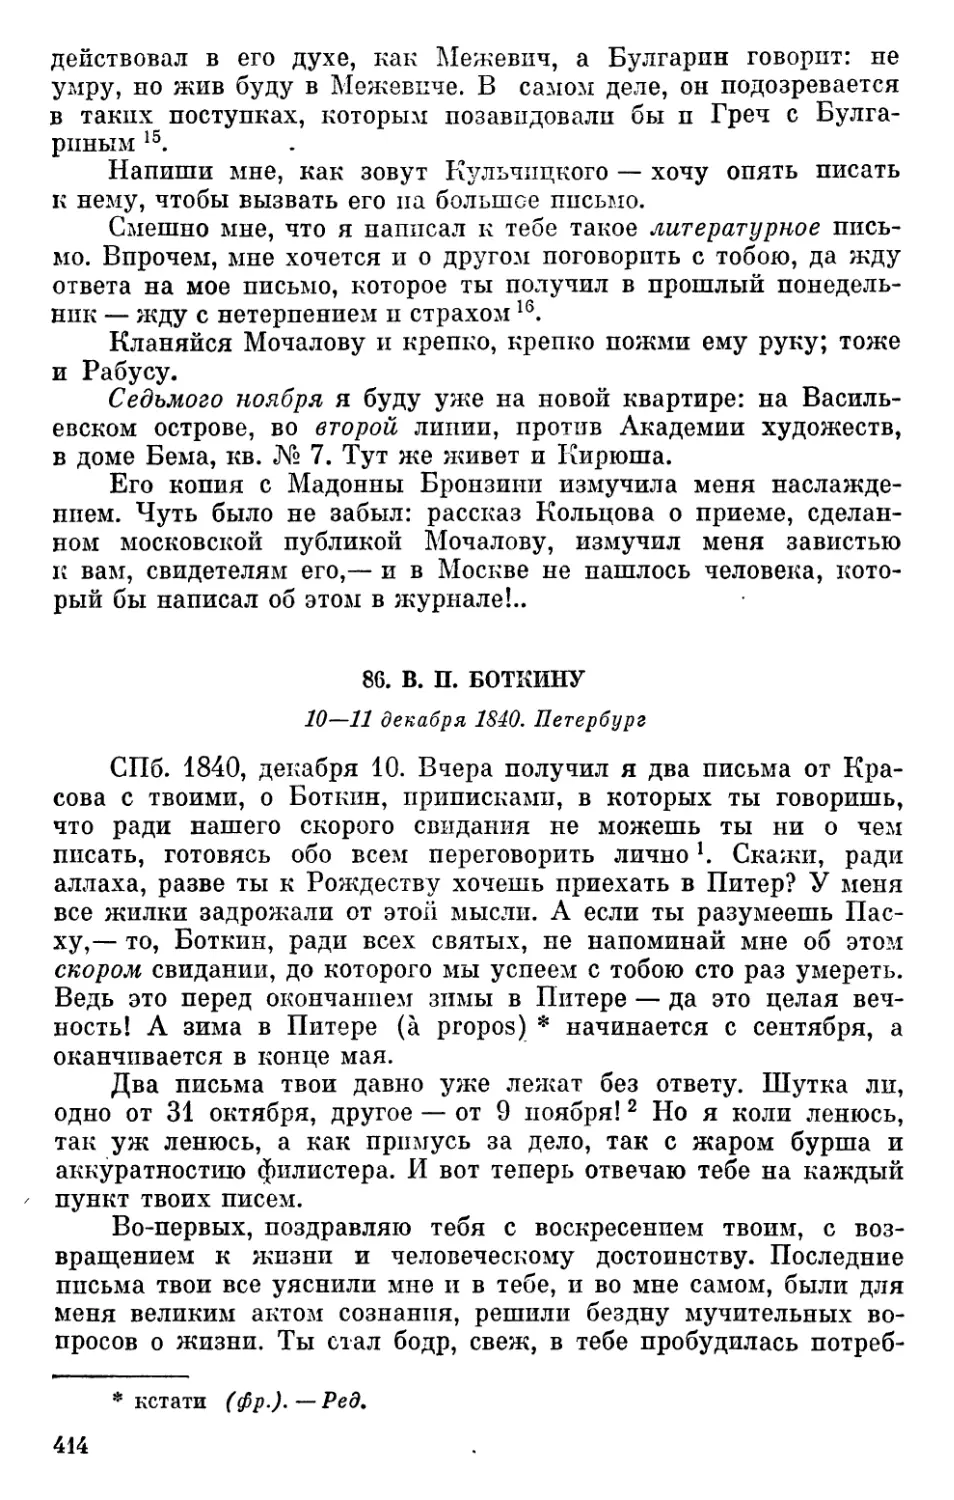 86. В. П. Боткину. 10—11 декабря 1840